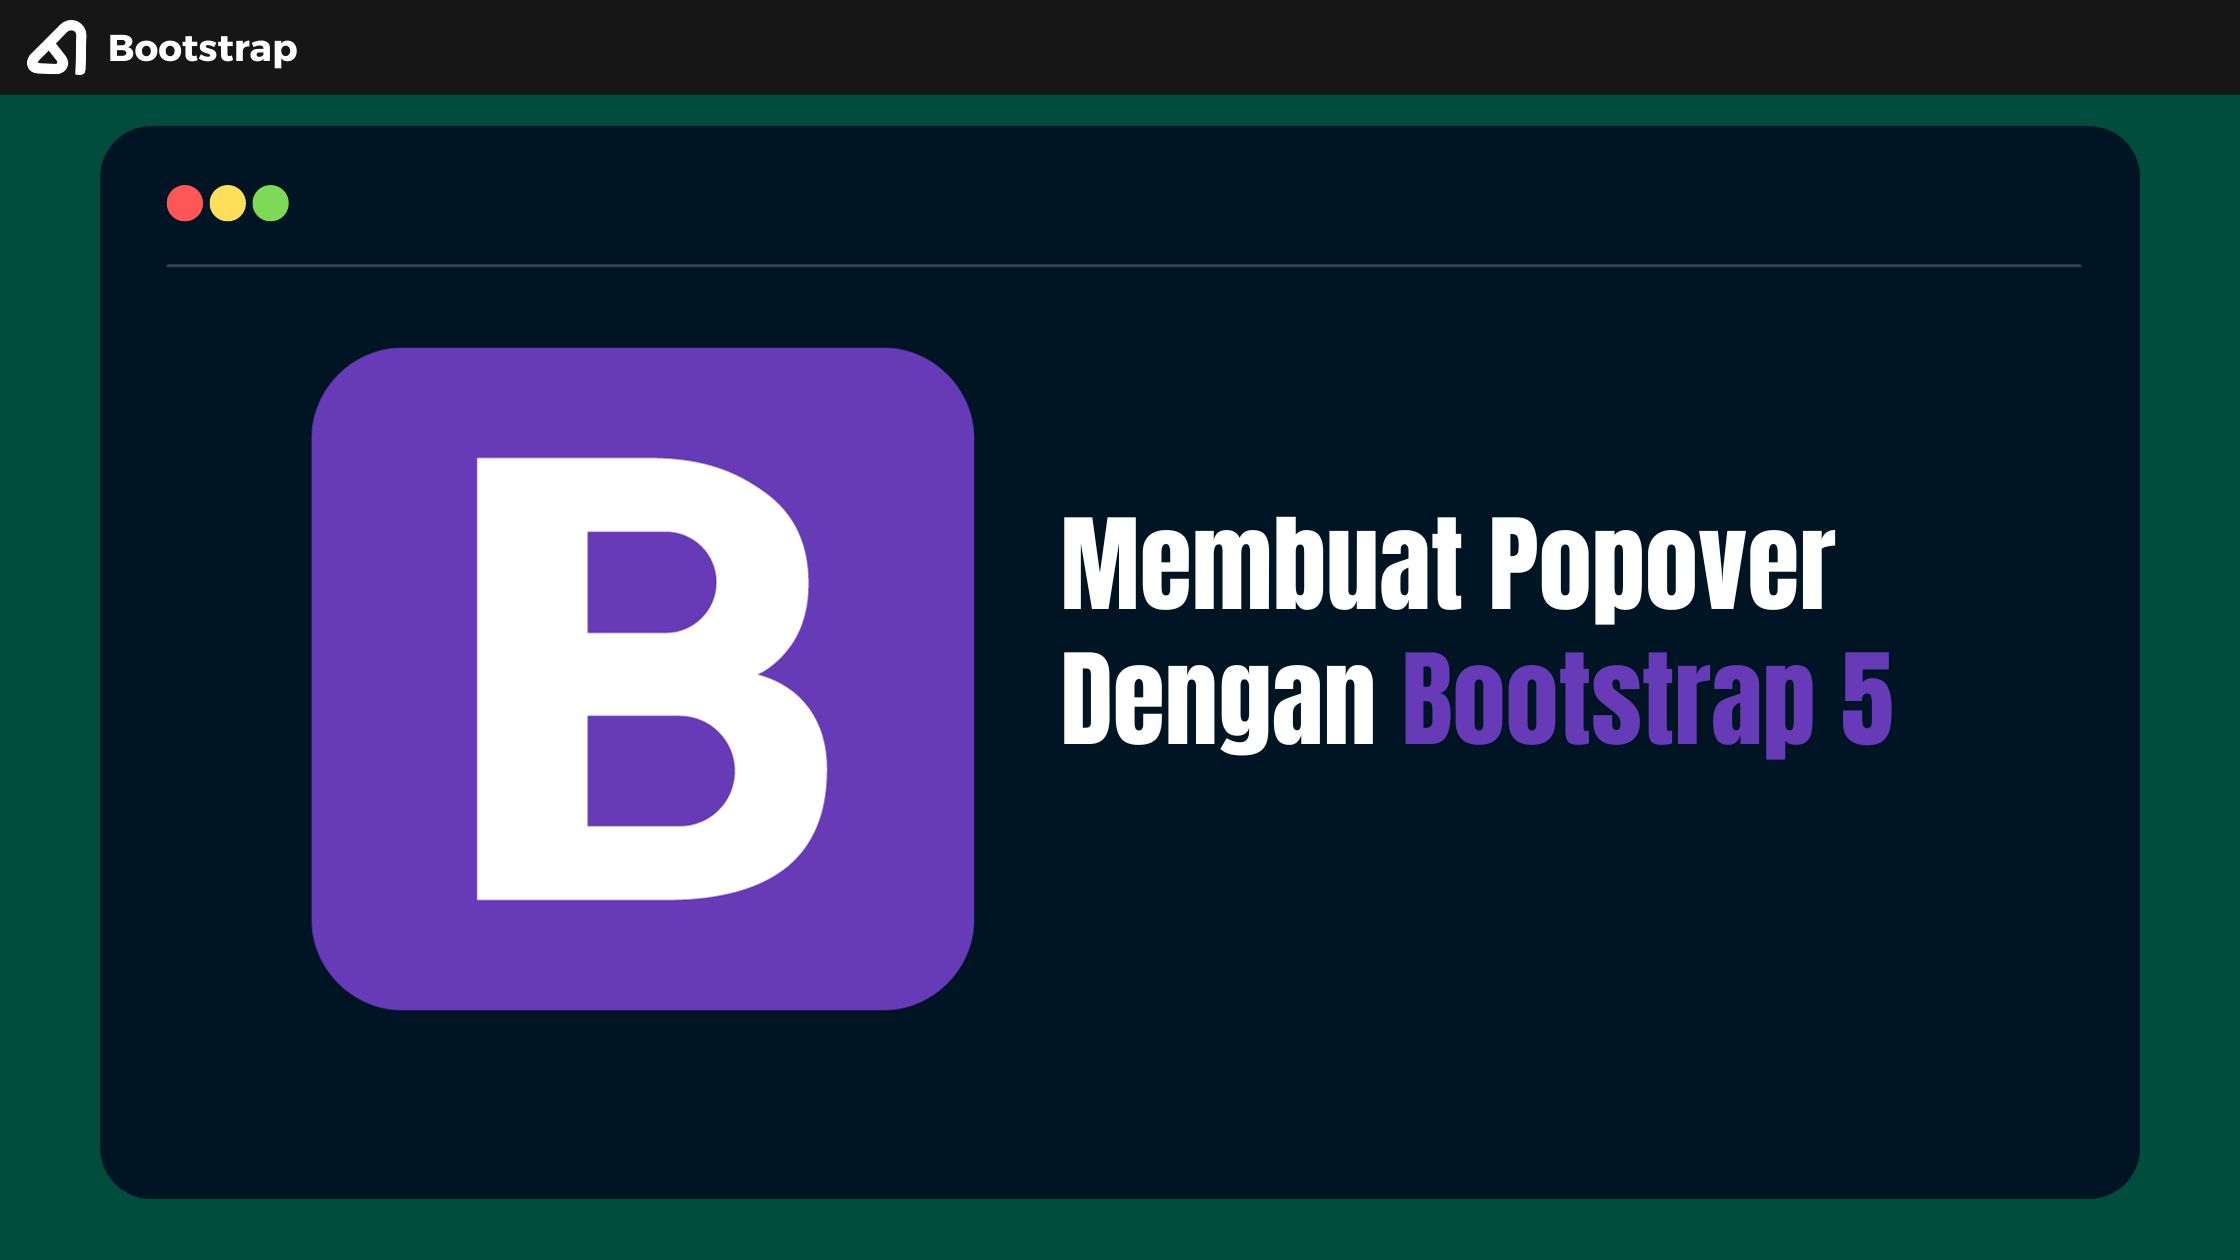 Membuat Popover Dengan Bootstrap 5